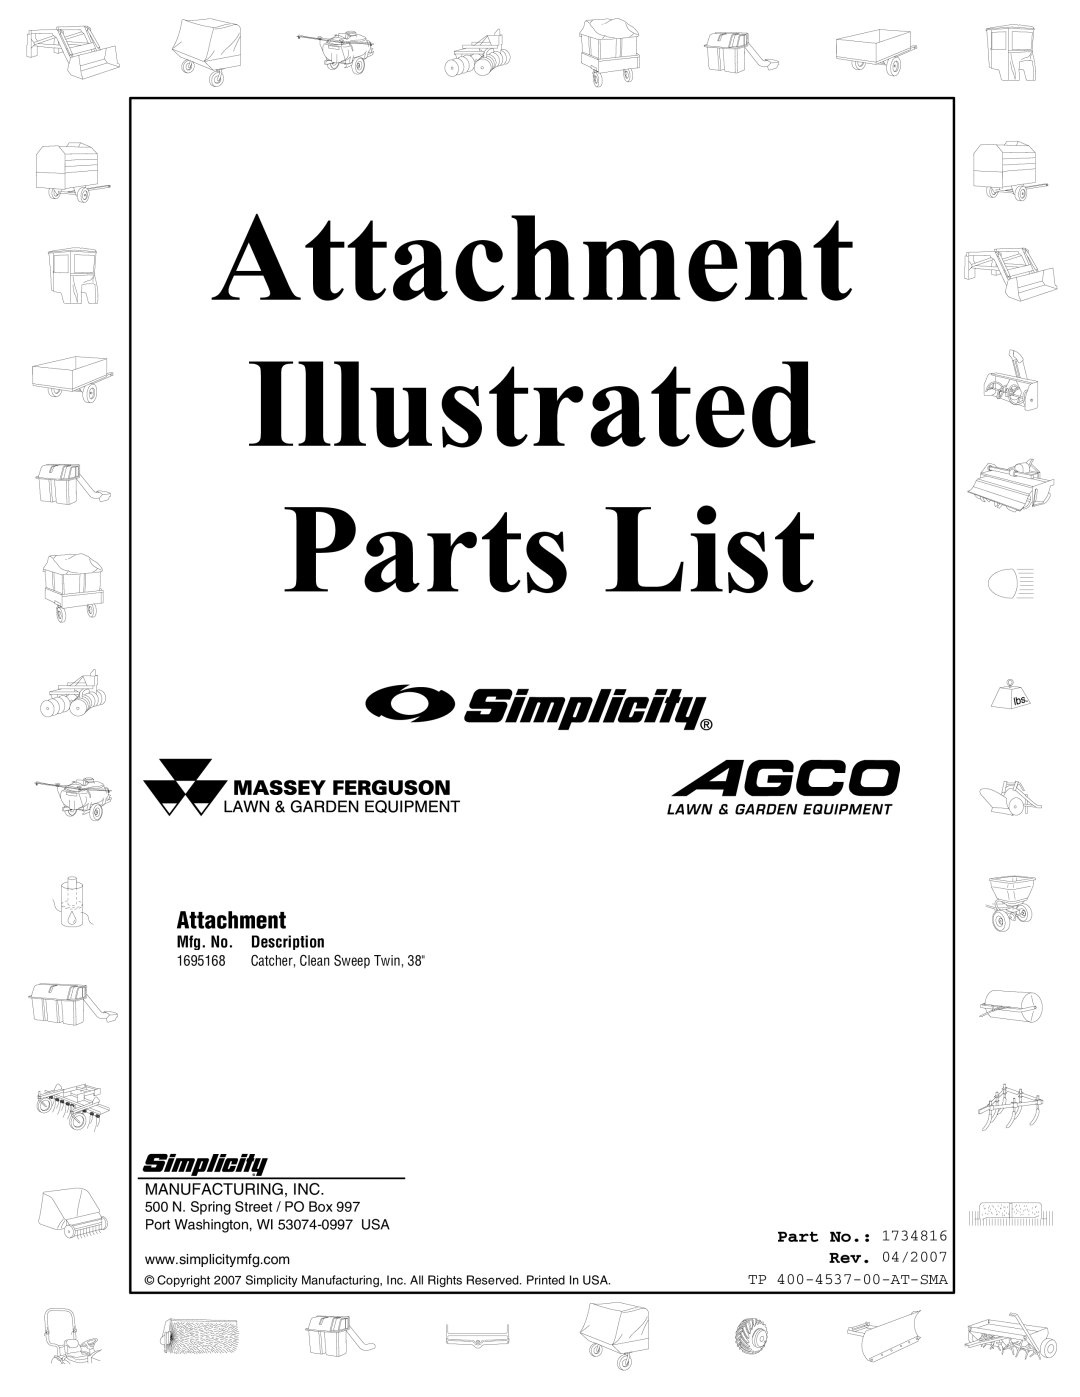 Snapper 4531 manual Attachment, Part No, Mfg. No, Description, Illustrated, Parts List, Rev. 04/2007 